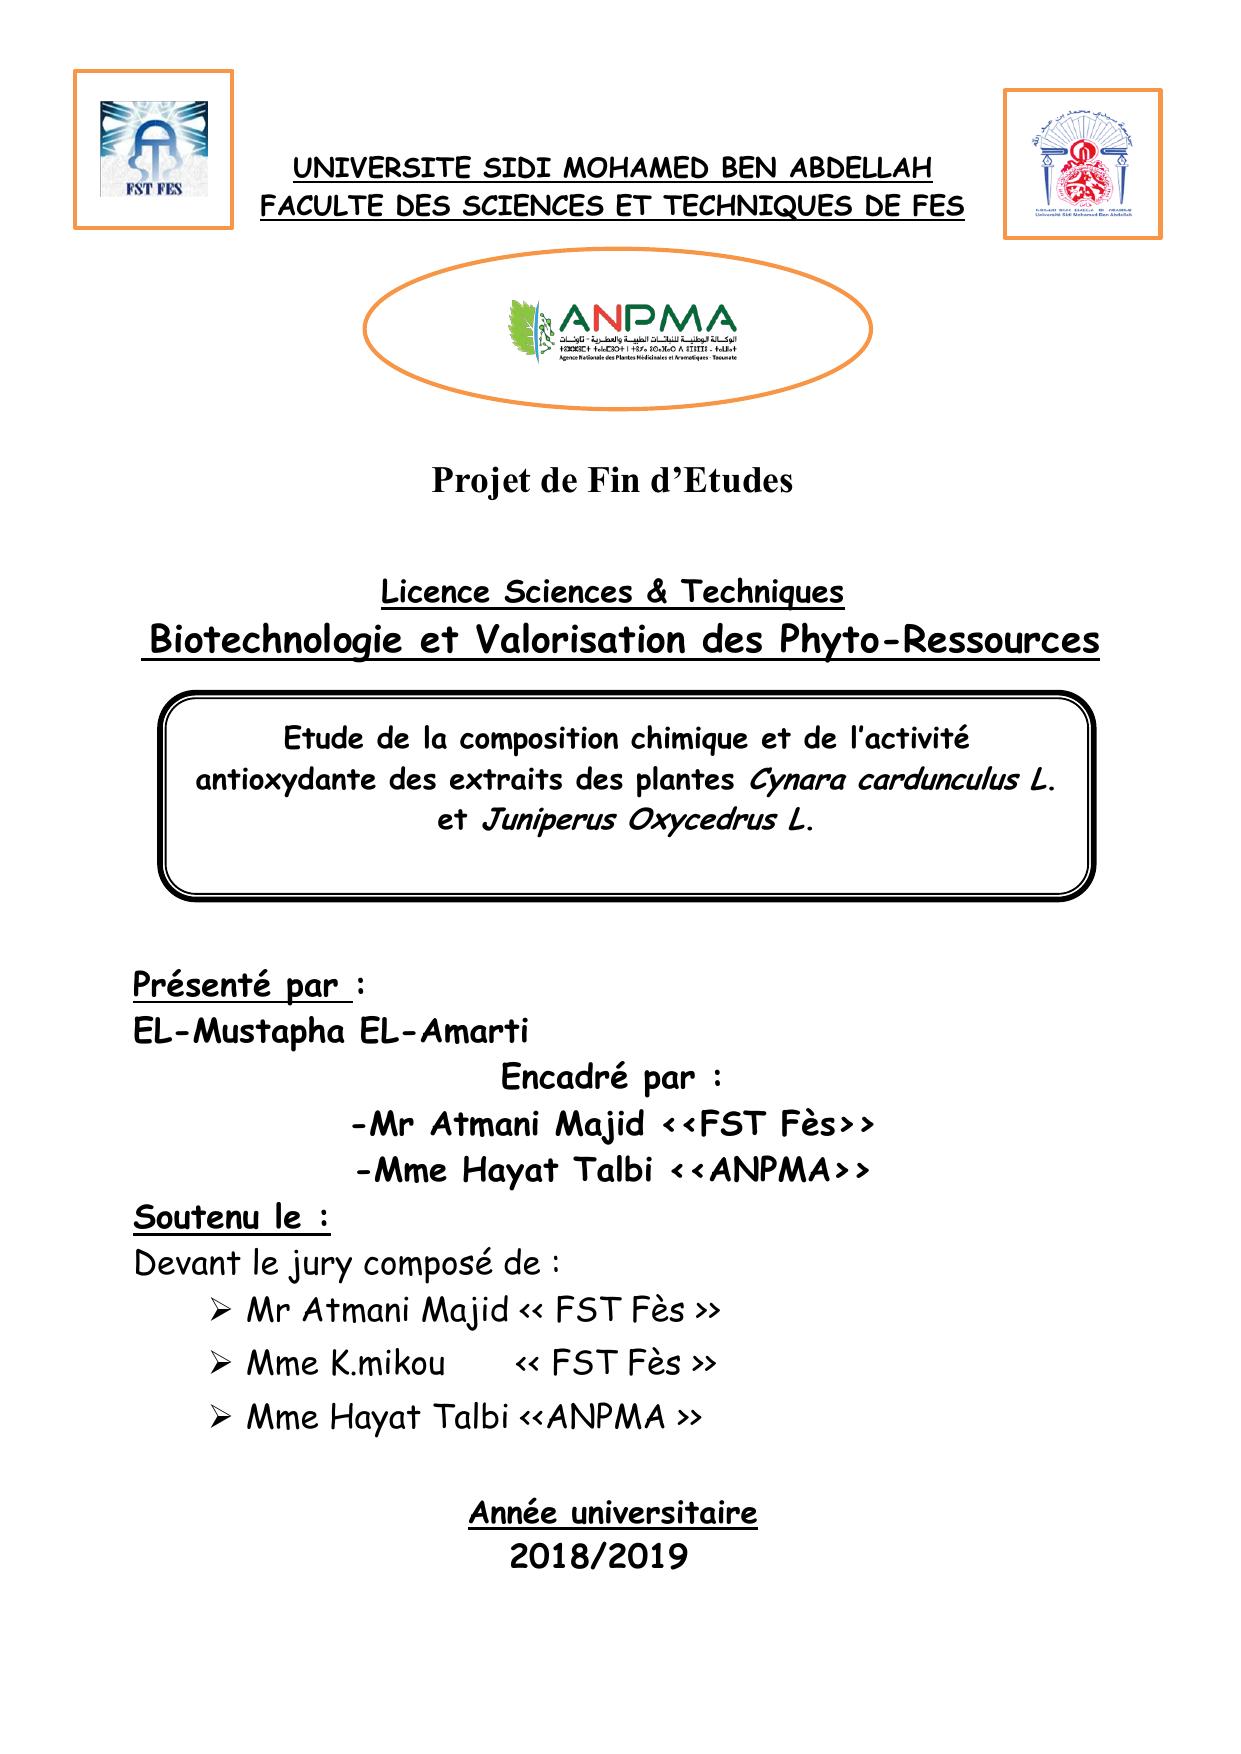 Etude de la composition chimique et de l’activité antioxydante des extraits des plantes Cynara cardunculus L. et Juniperus Oxycedrus L.